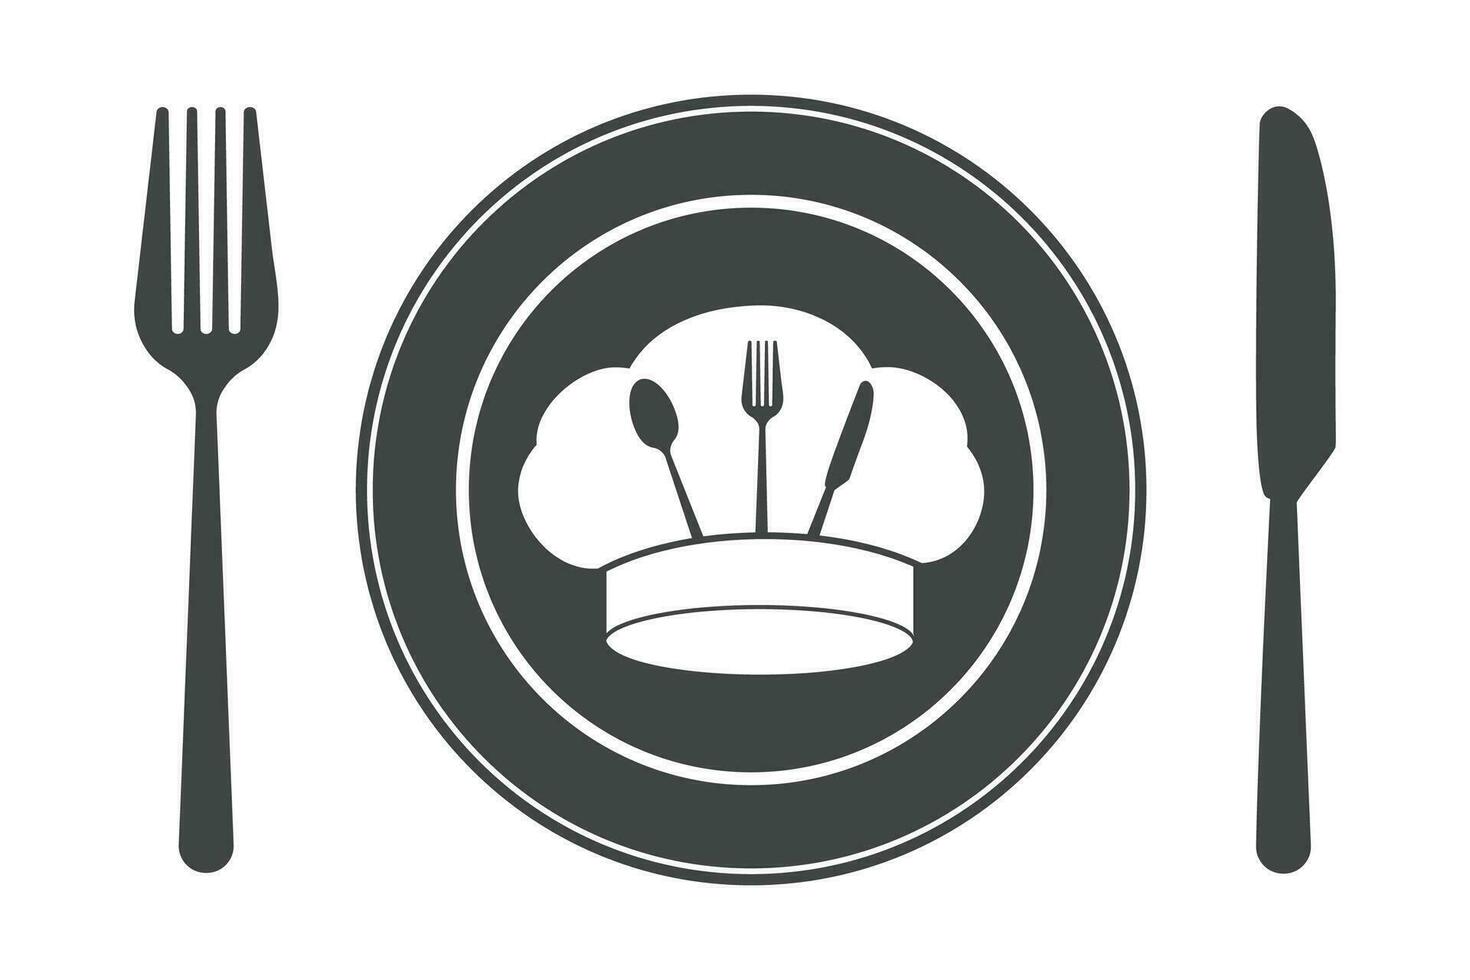 Utensil Vector,  Restaurant Equipment, Cooking Equipment, Clip Art, Silhouette, Fork, Spoon, Fork Silhouette, illustration vector